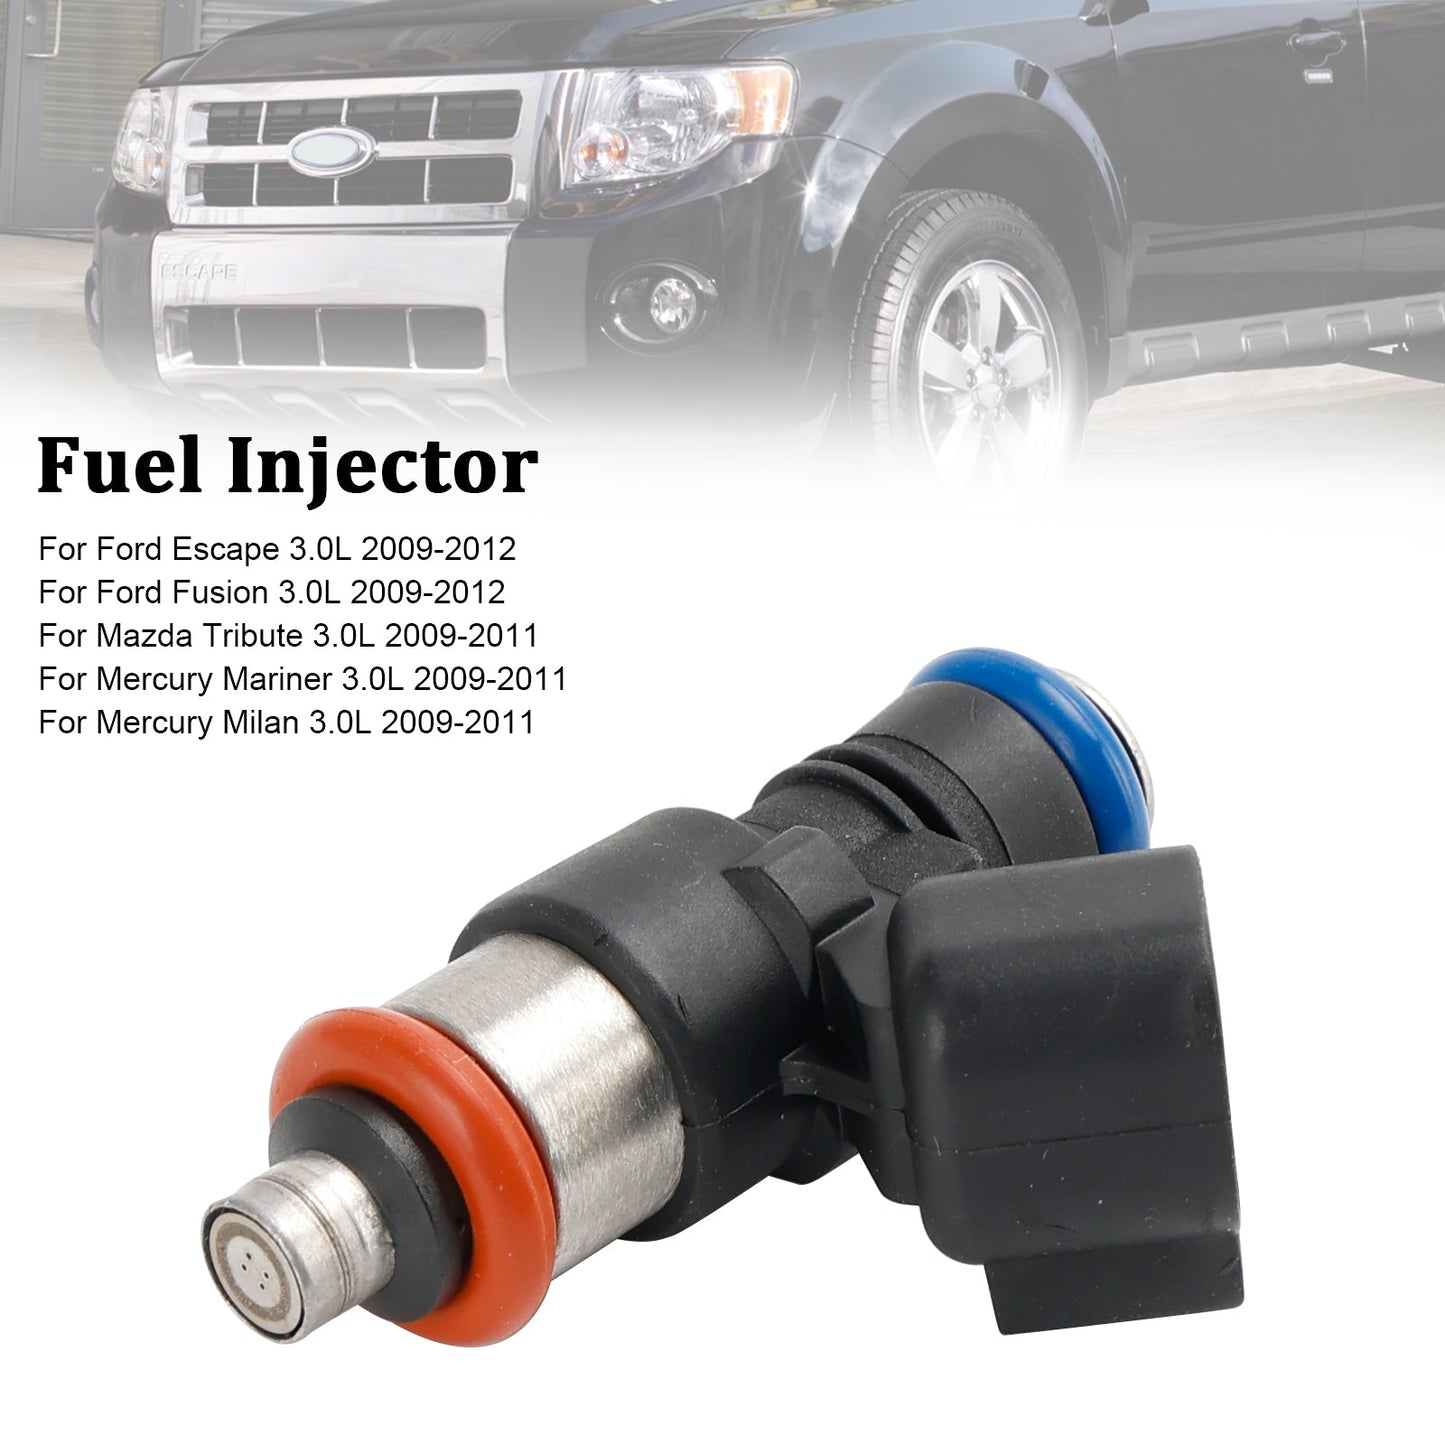 1PCS Fuel Injector 0280158189 Fit Ford Escape Fusion Fit Mazda 3.0L V6